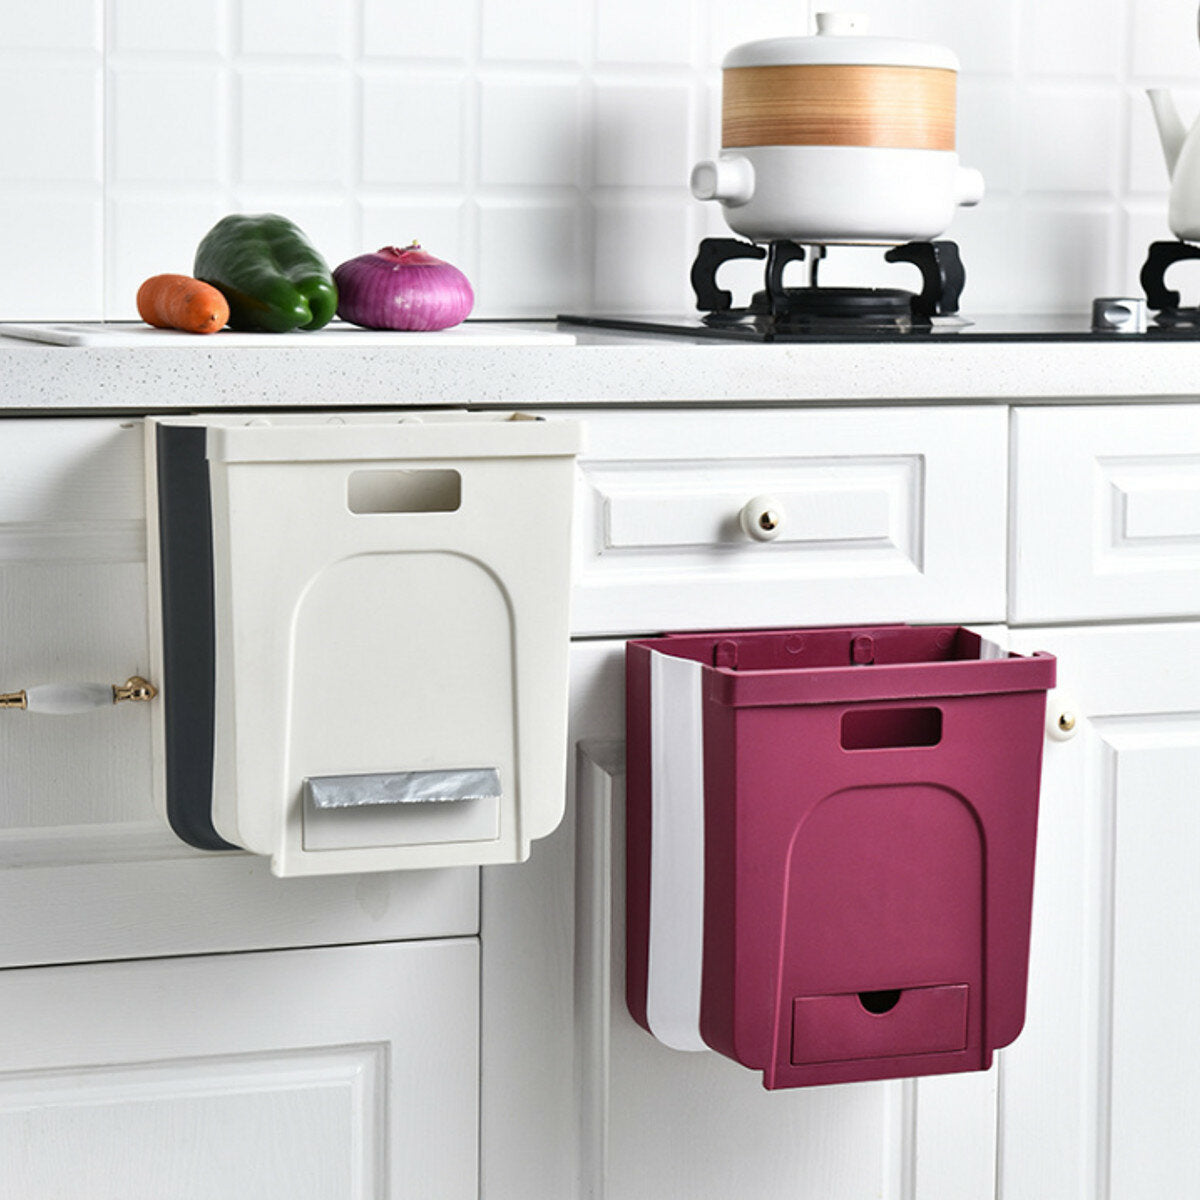 wandmontage opvouwbare afvalbak keukenkast deur prullenbak bin